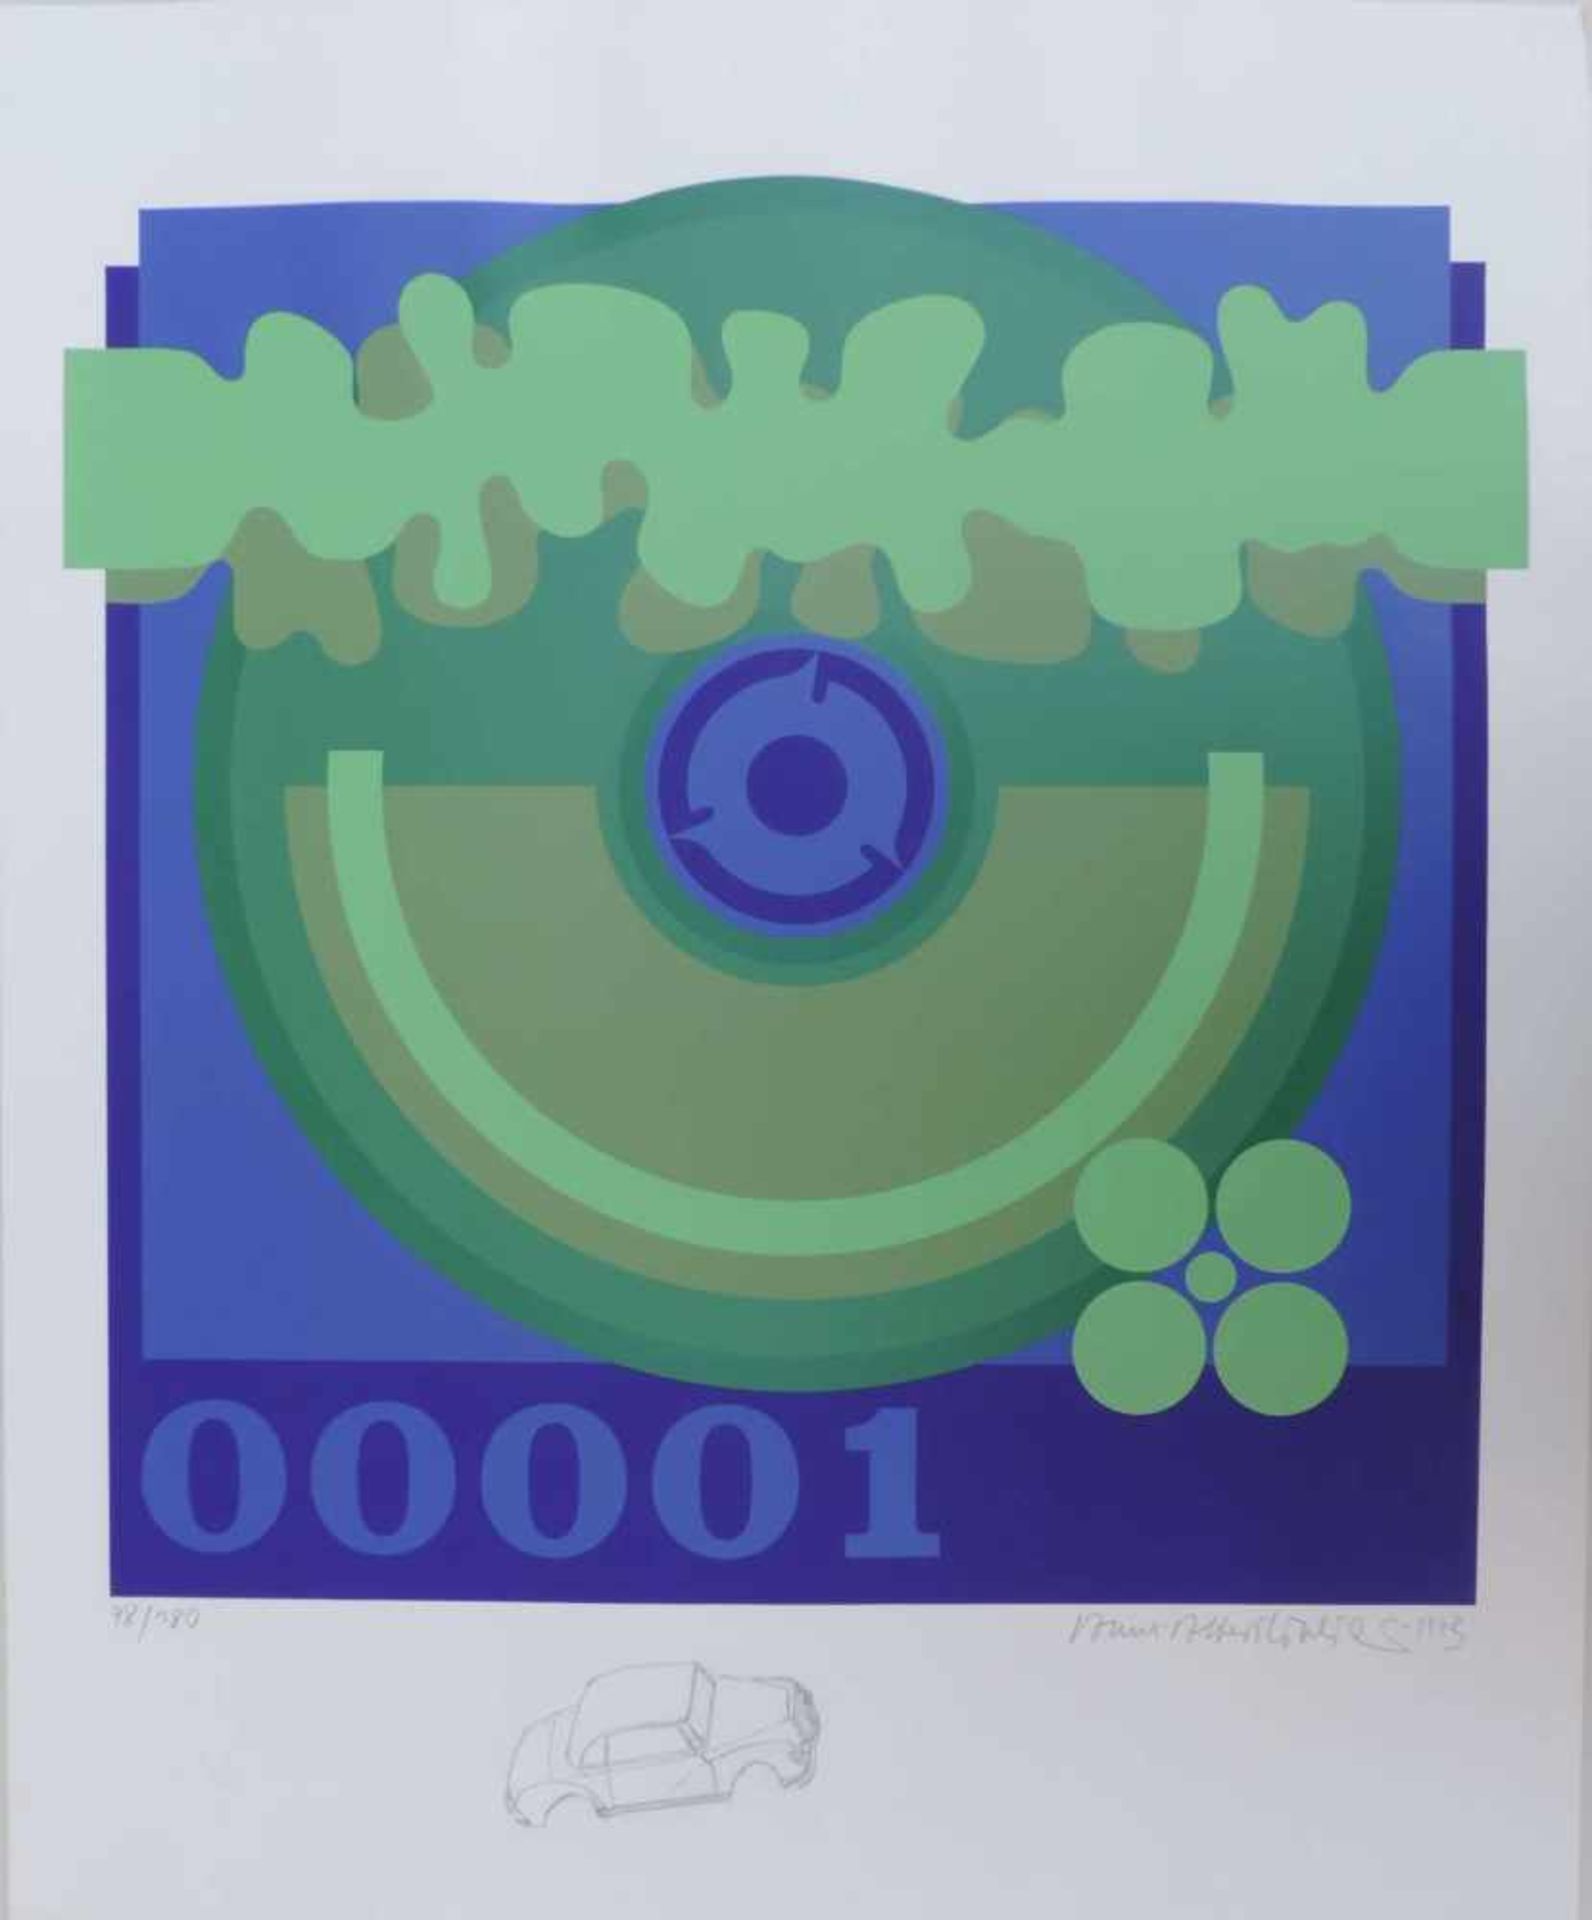 ANONYMUS/MA, Farbserigrafie, grüner Kreis auf blauem Grund, "00001", im Einfall sig (